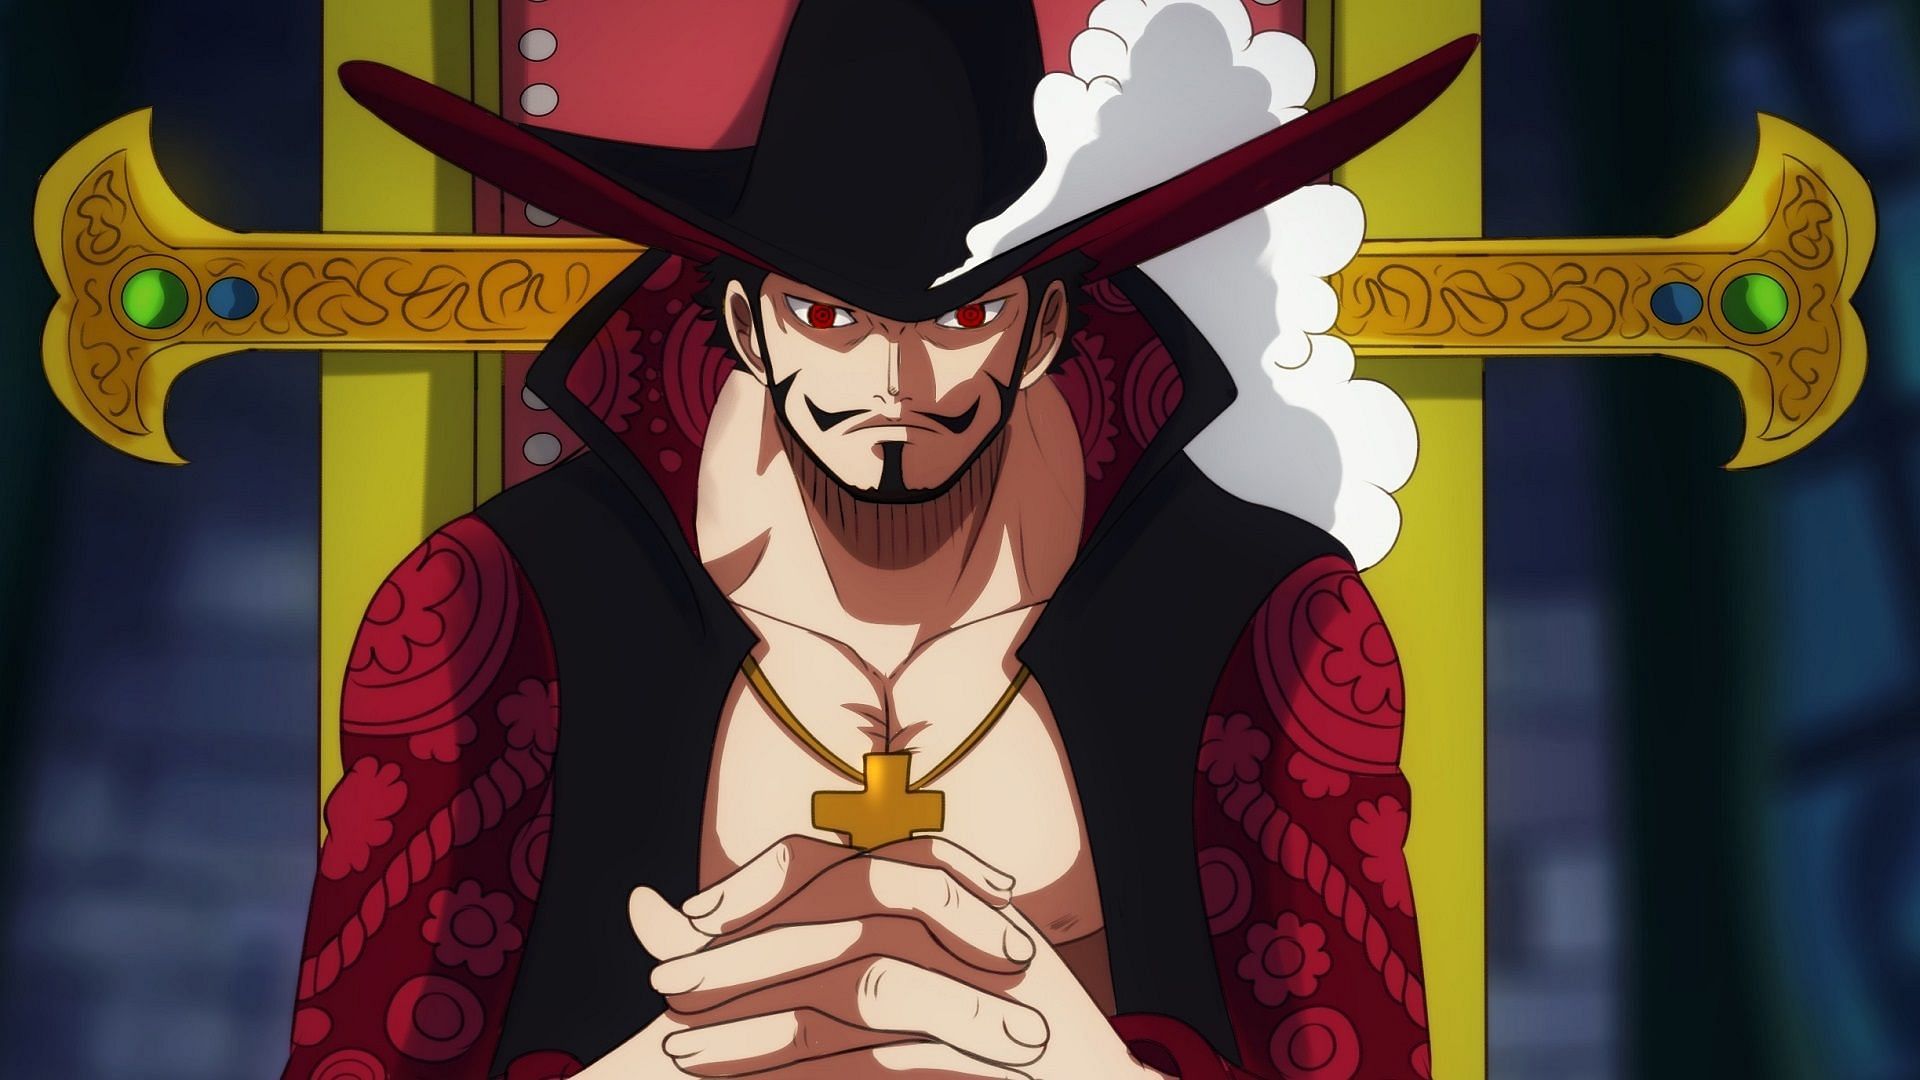 Dracule Mihawk (Image via Toei Animation, One Piece)